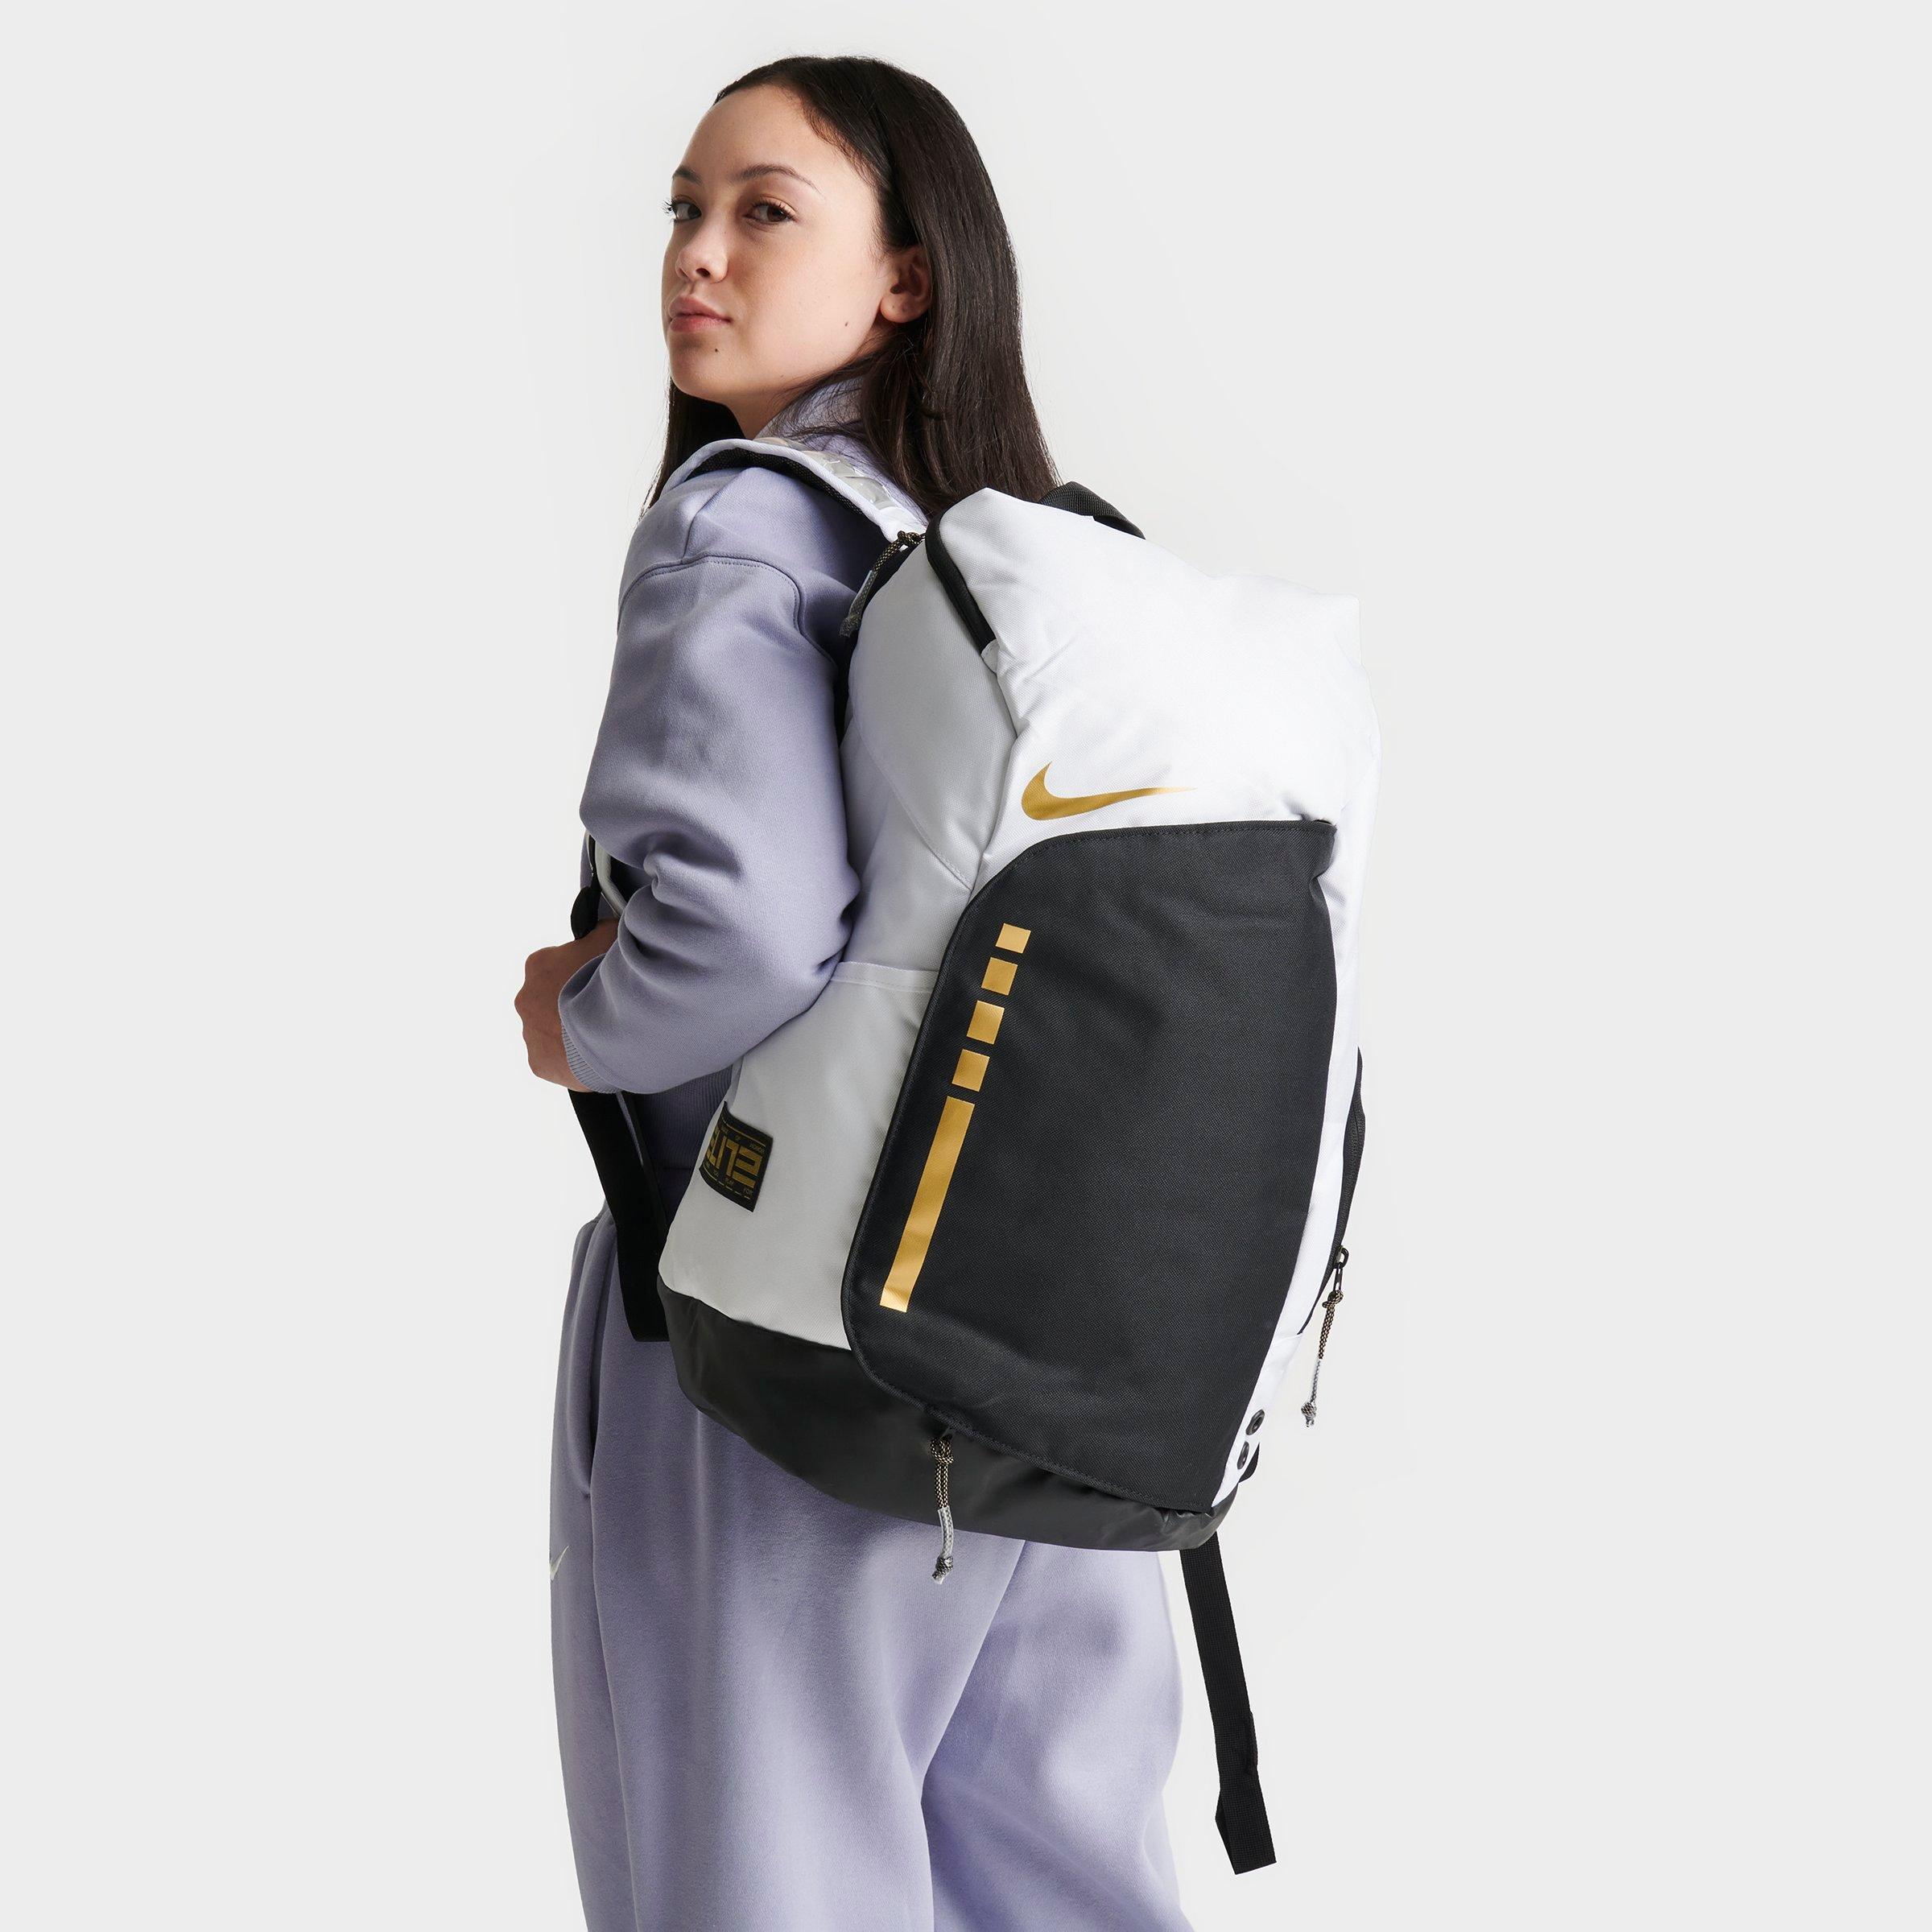 Nike Elite Pro Basketball Backpack Ba6164-013